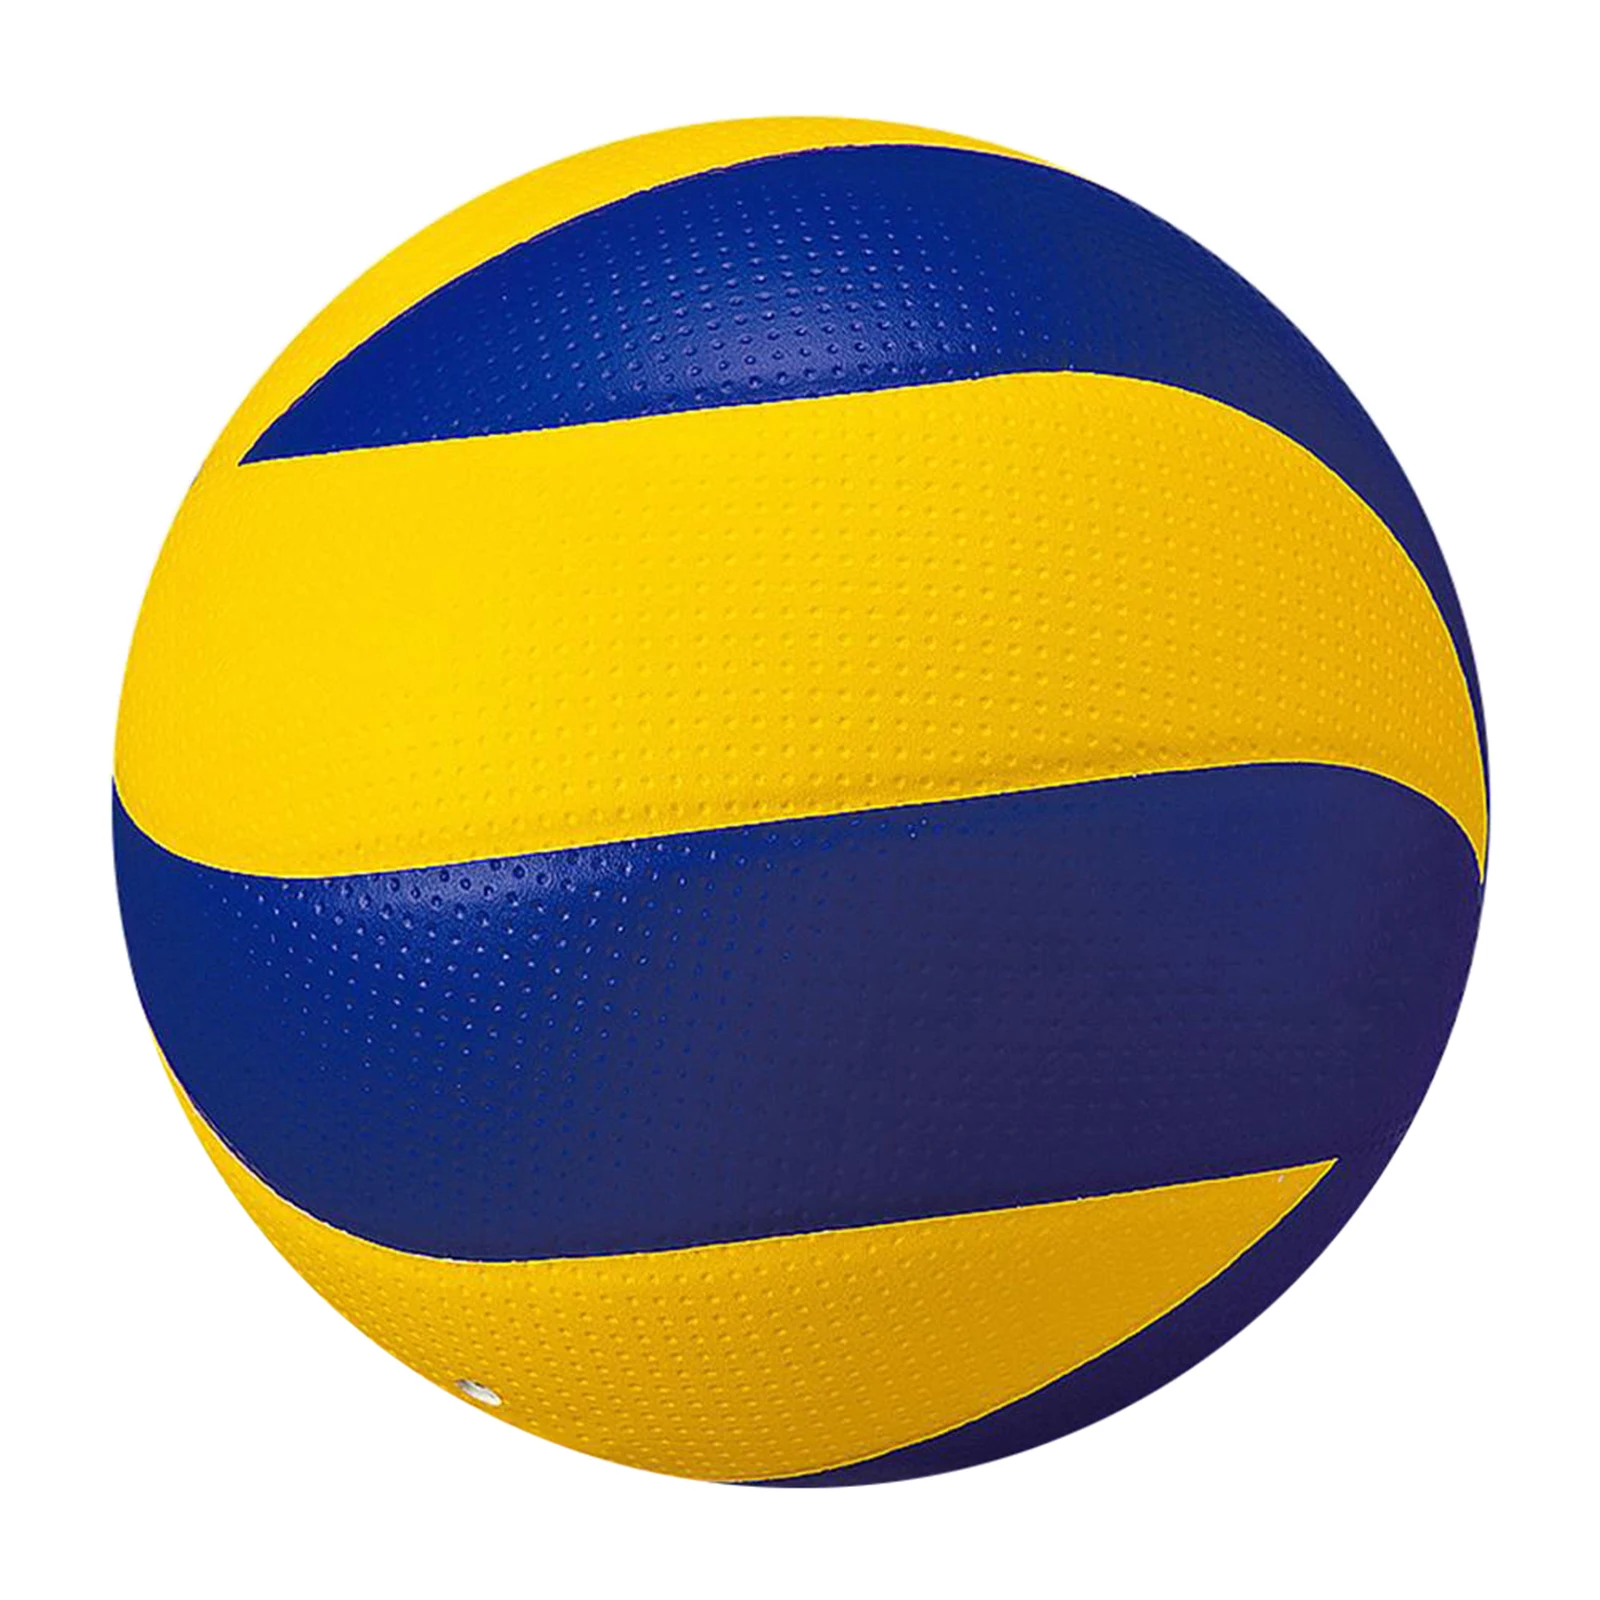 

Профессиональный мягкий мяч для пляжного волейбола стандартного размера 5 из искусственной кожи, для игр в тренажерном зале